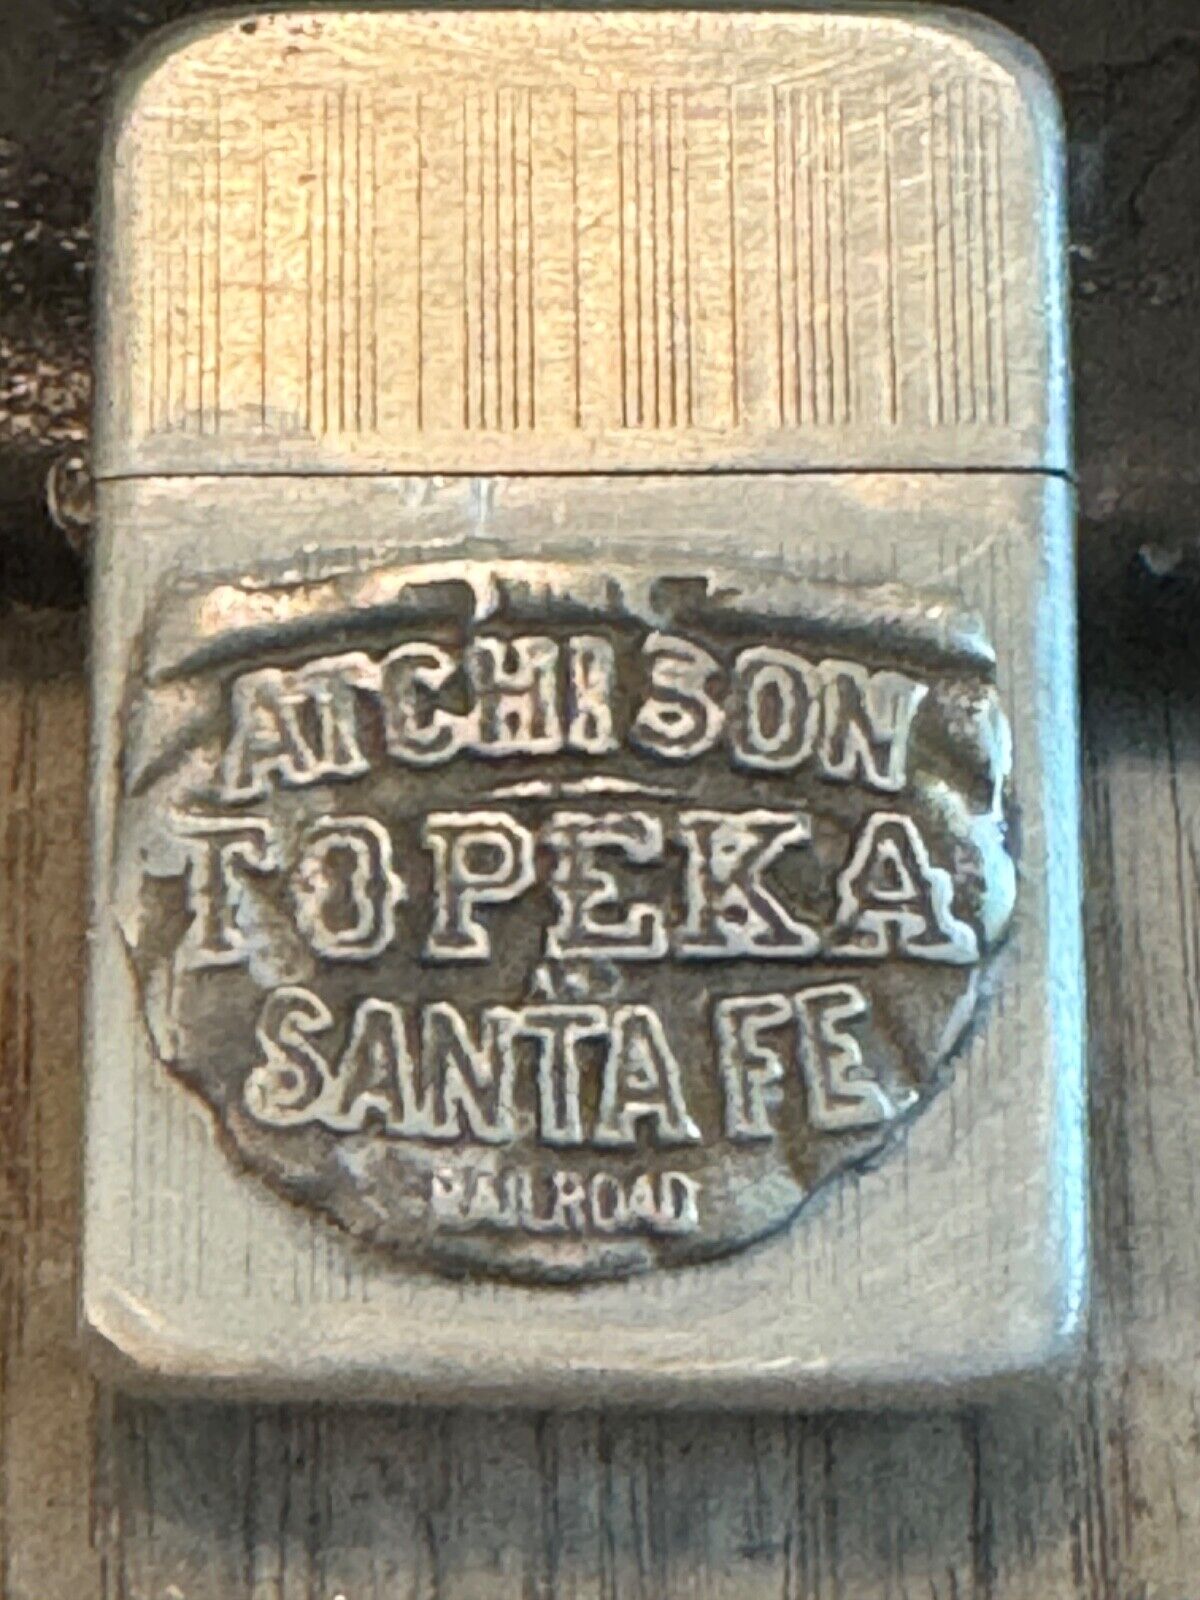 Vintage Lighter Atchison-Topeka Santa Fe Railroad